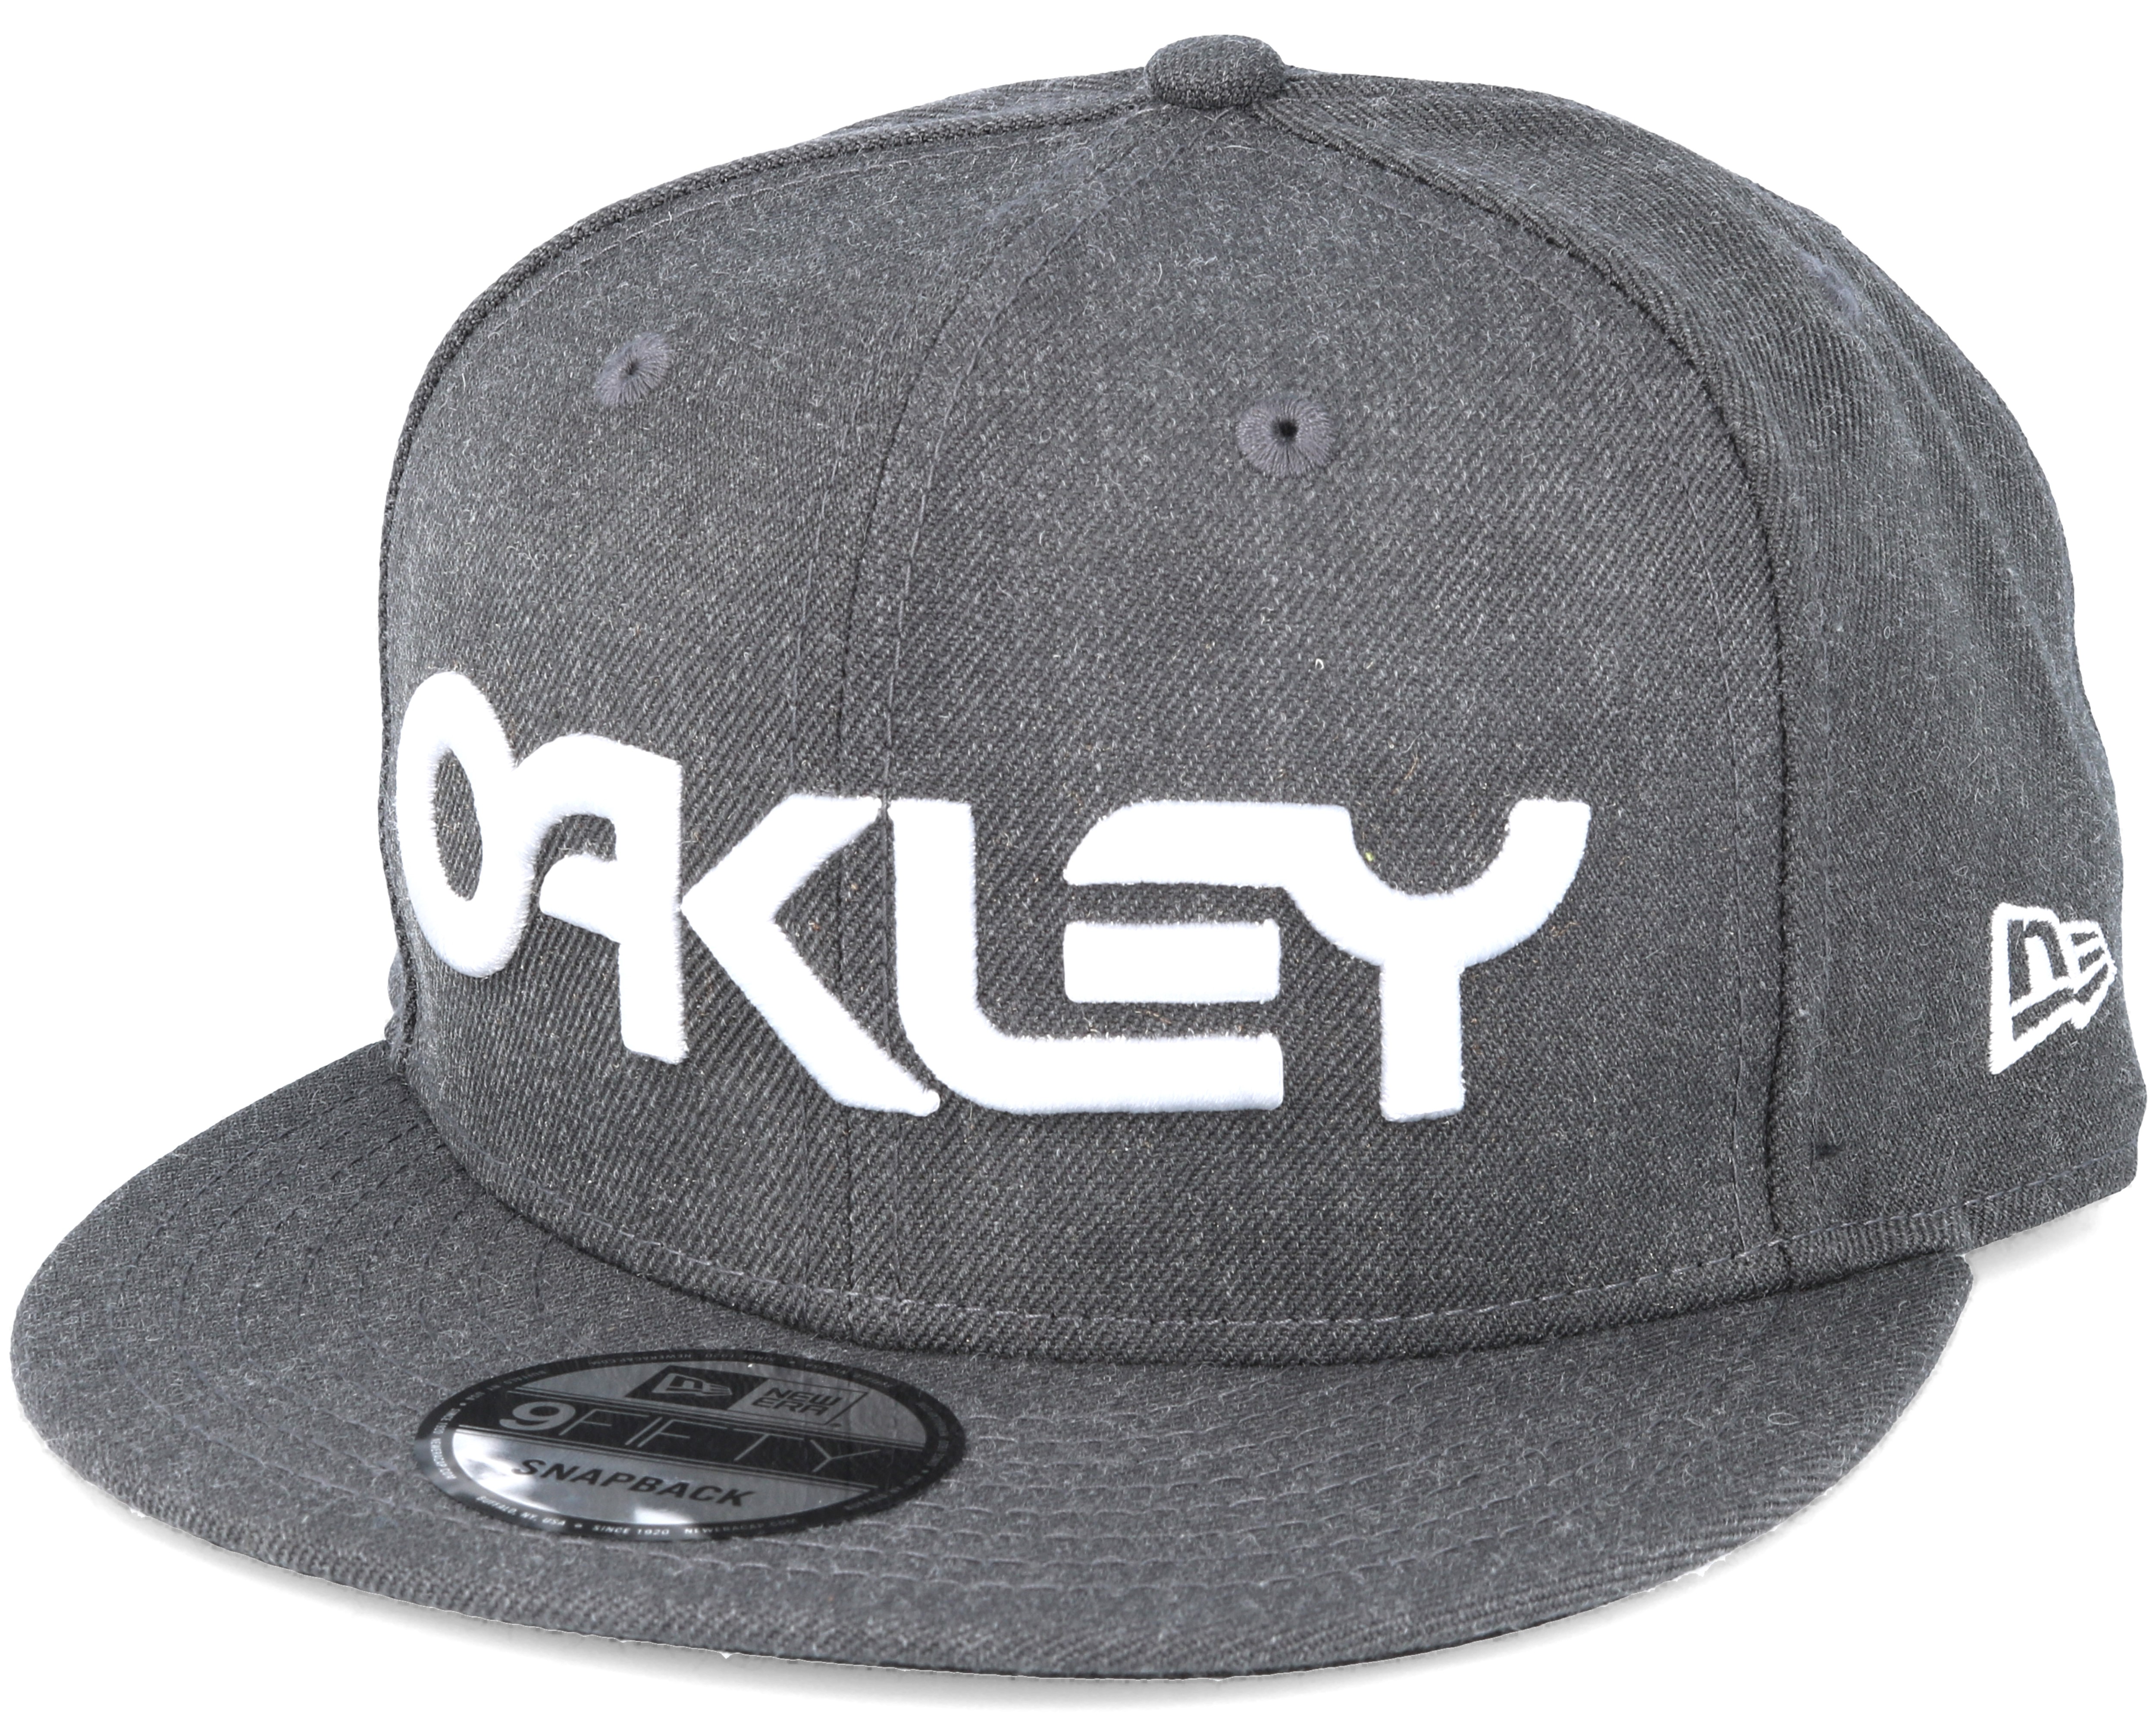 Mark II Novelty Grey Snapback - Oakley caps | Hatstore.co.uk